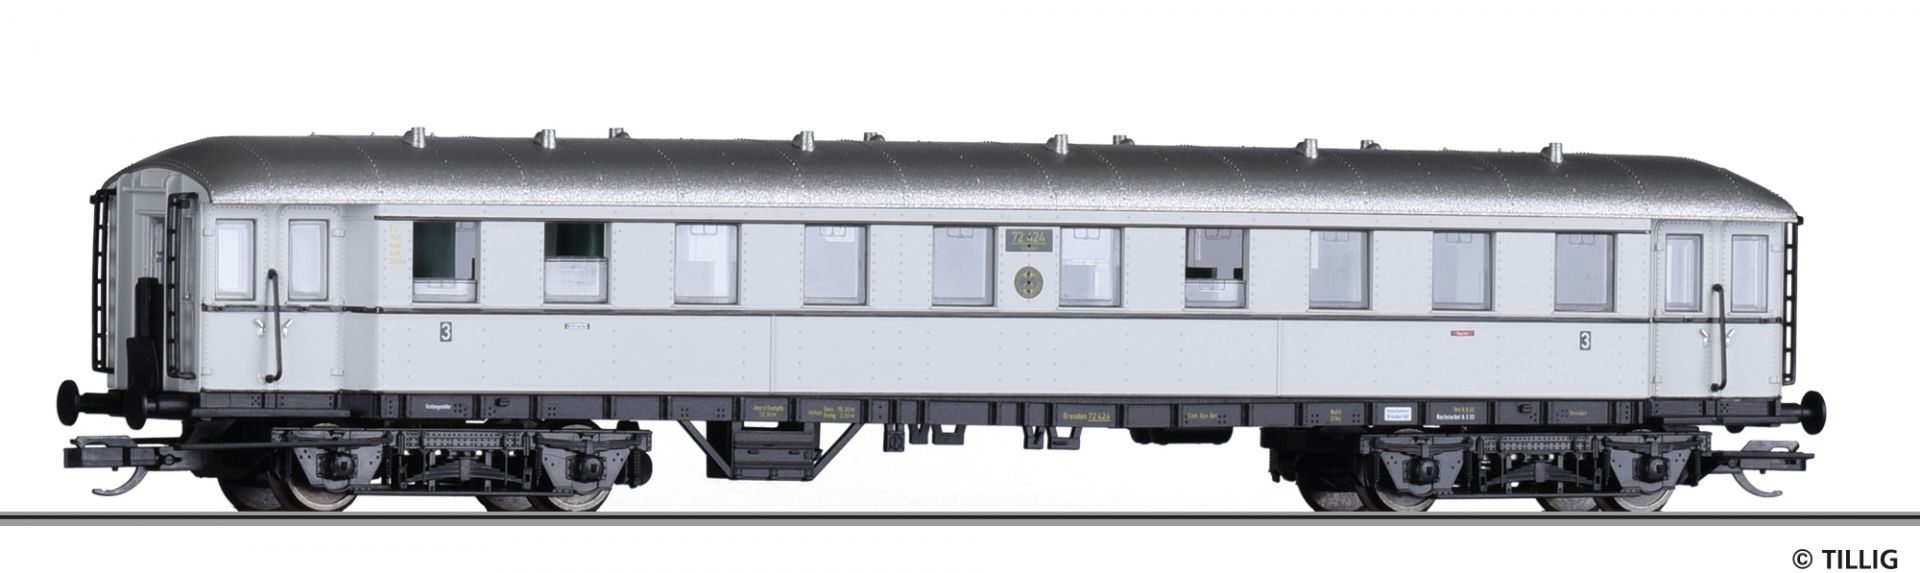 501948 | Reisezugwagen DRG -werksseitig ausverkauft-